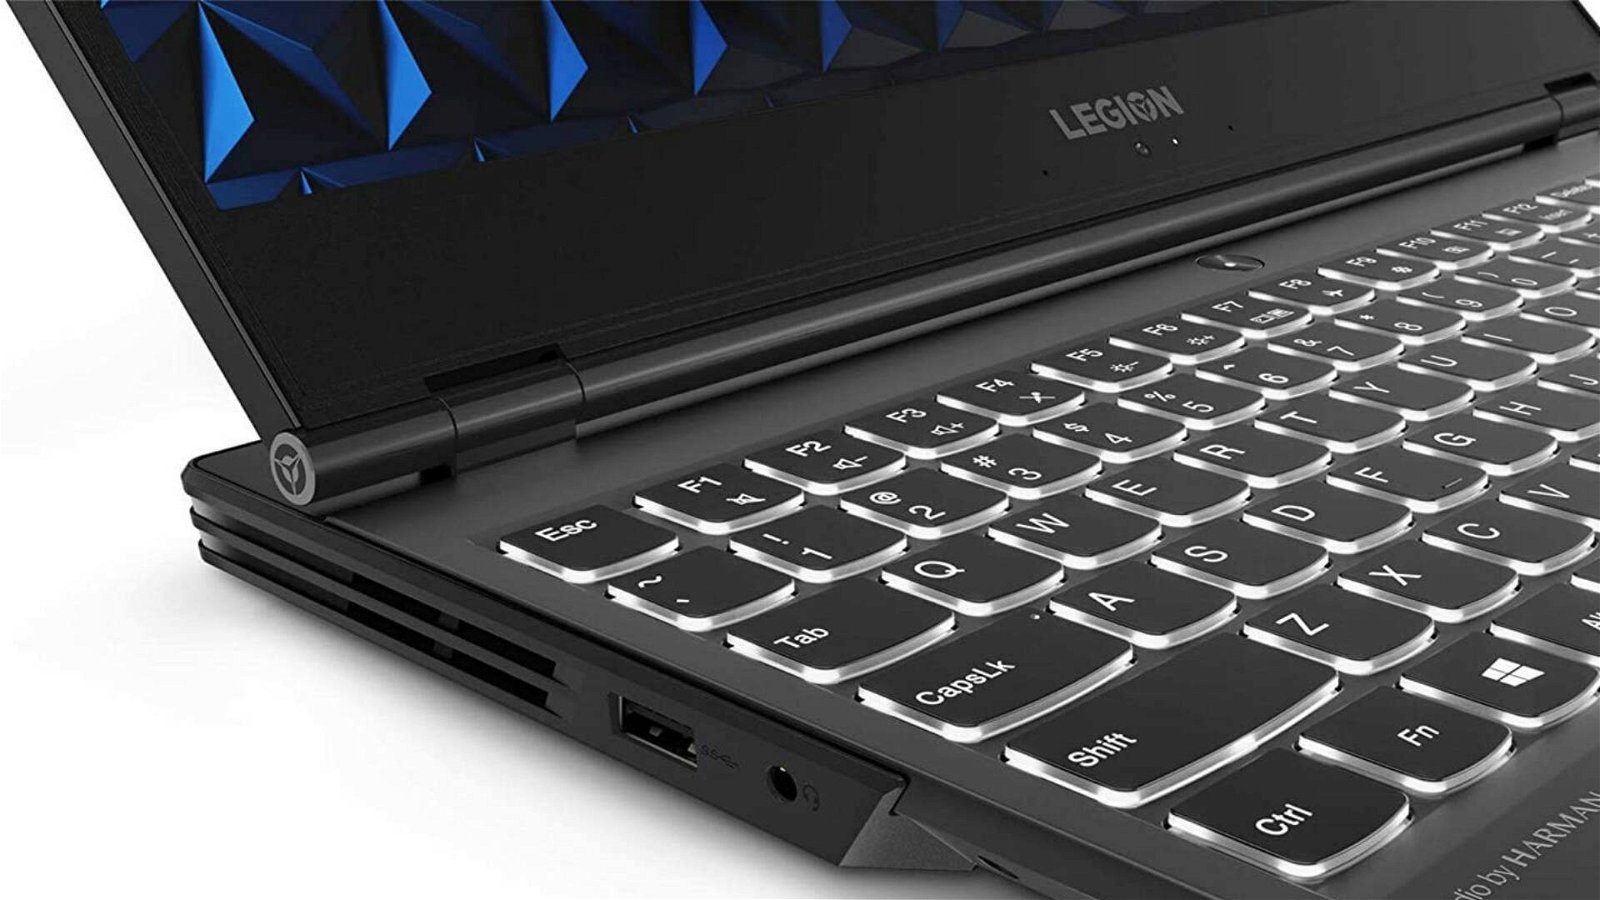 Immagine di Offerte del giorno Amazon: notebook gaming Lenovo Legion Y540 scontato di quasi 300€!